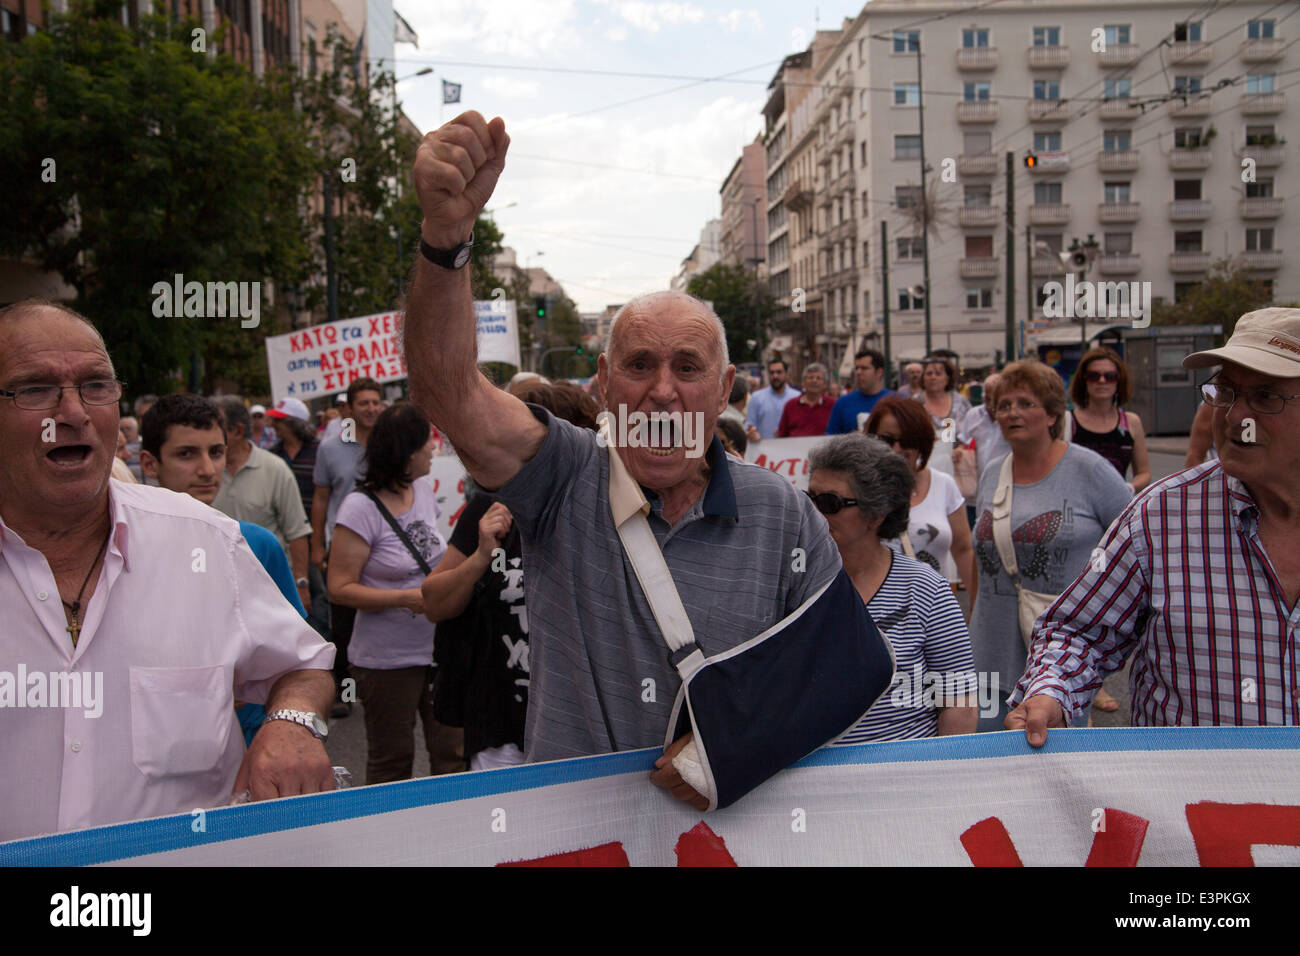 Griechische Rentner protestieren. Griechenland weiter protesta der Rentner gegen bevorstehende Kürzungen. 19.06.2014 Foto de stock